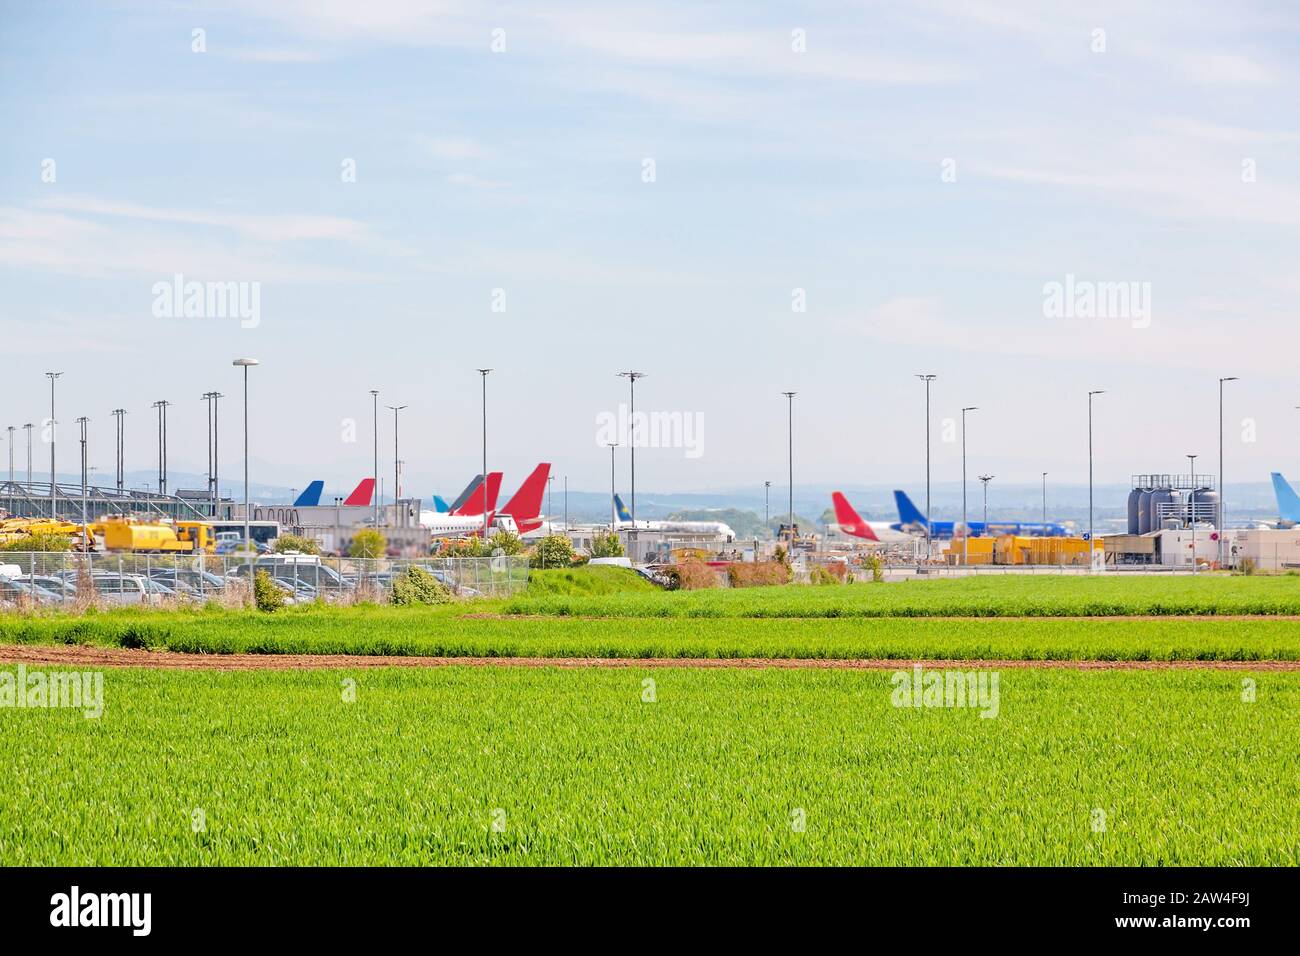 Aeroporto di Stoccarda, aerei di diverse compagnie aeree in posizione di parcheggio di fronte al terminal, campo verde in primo piano Foto Stock